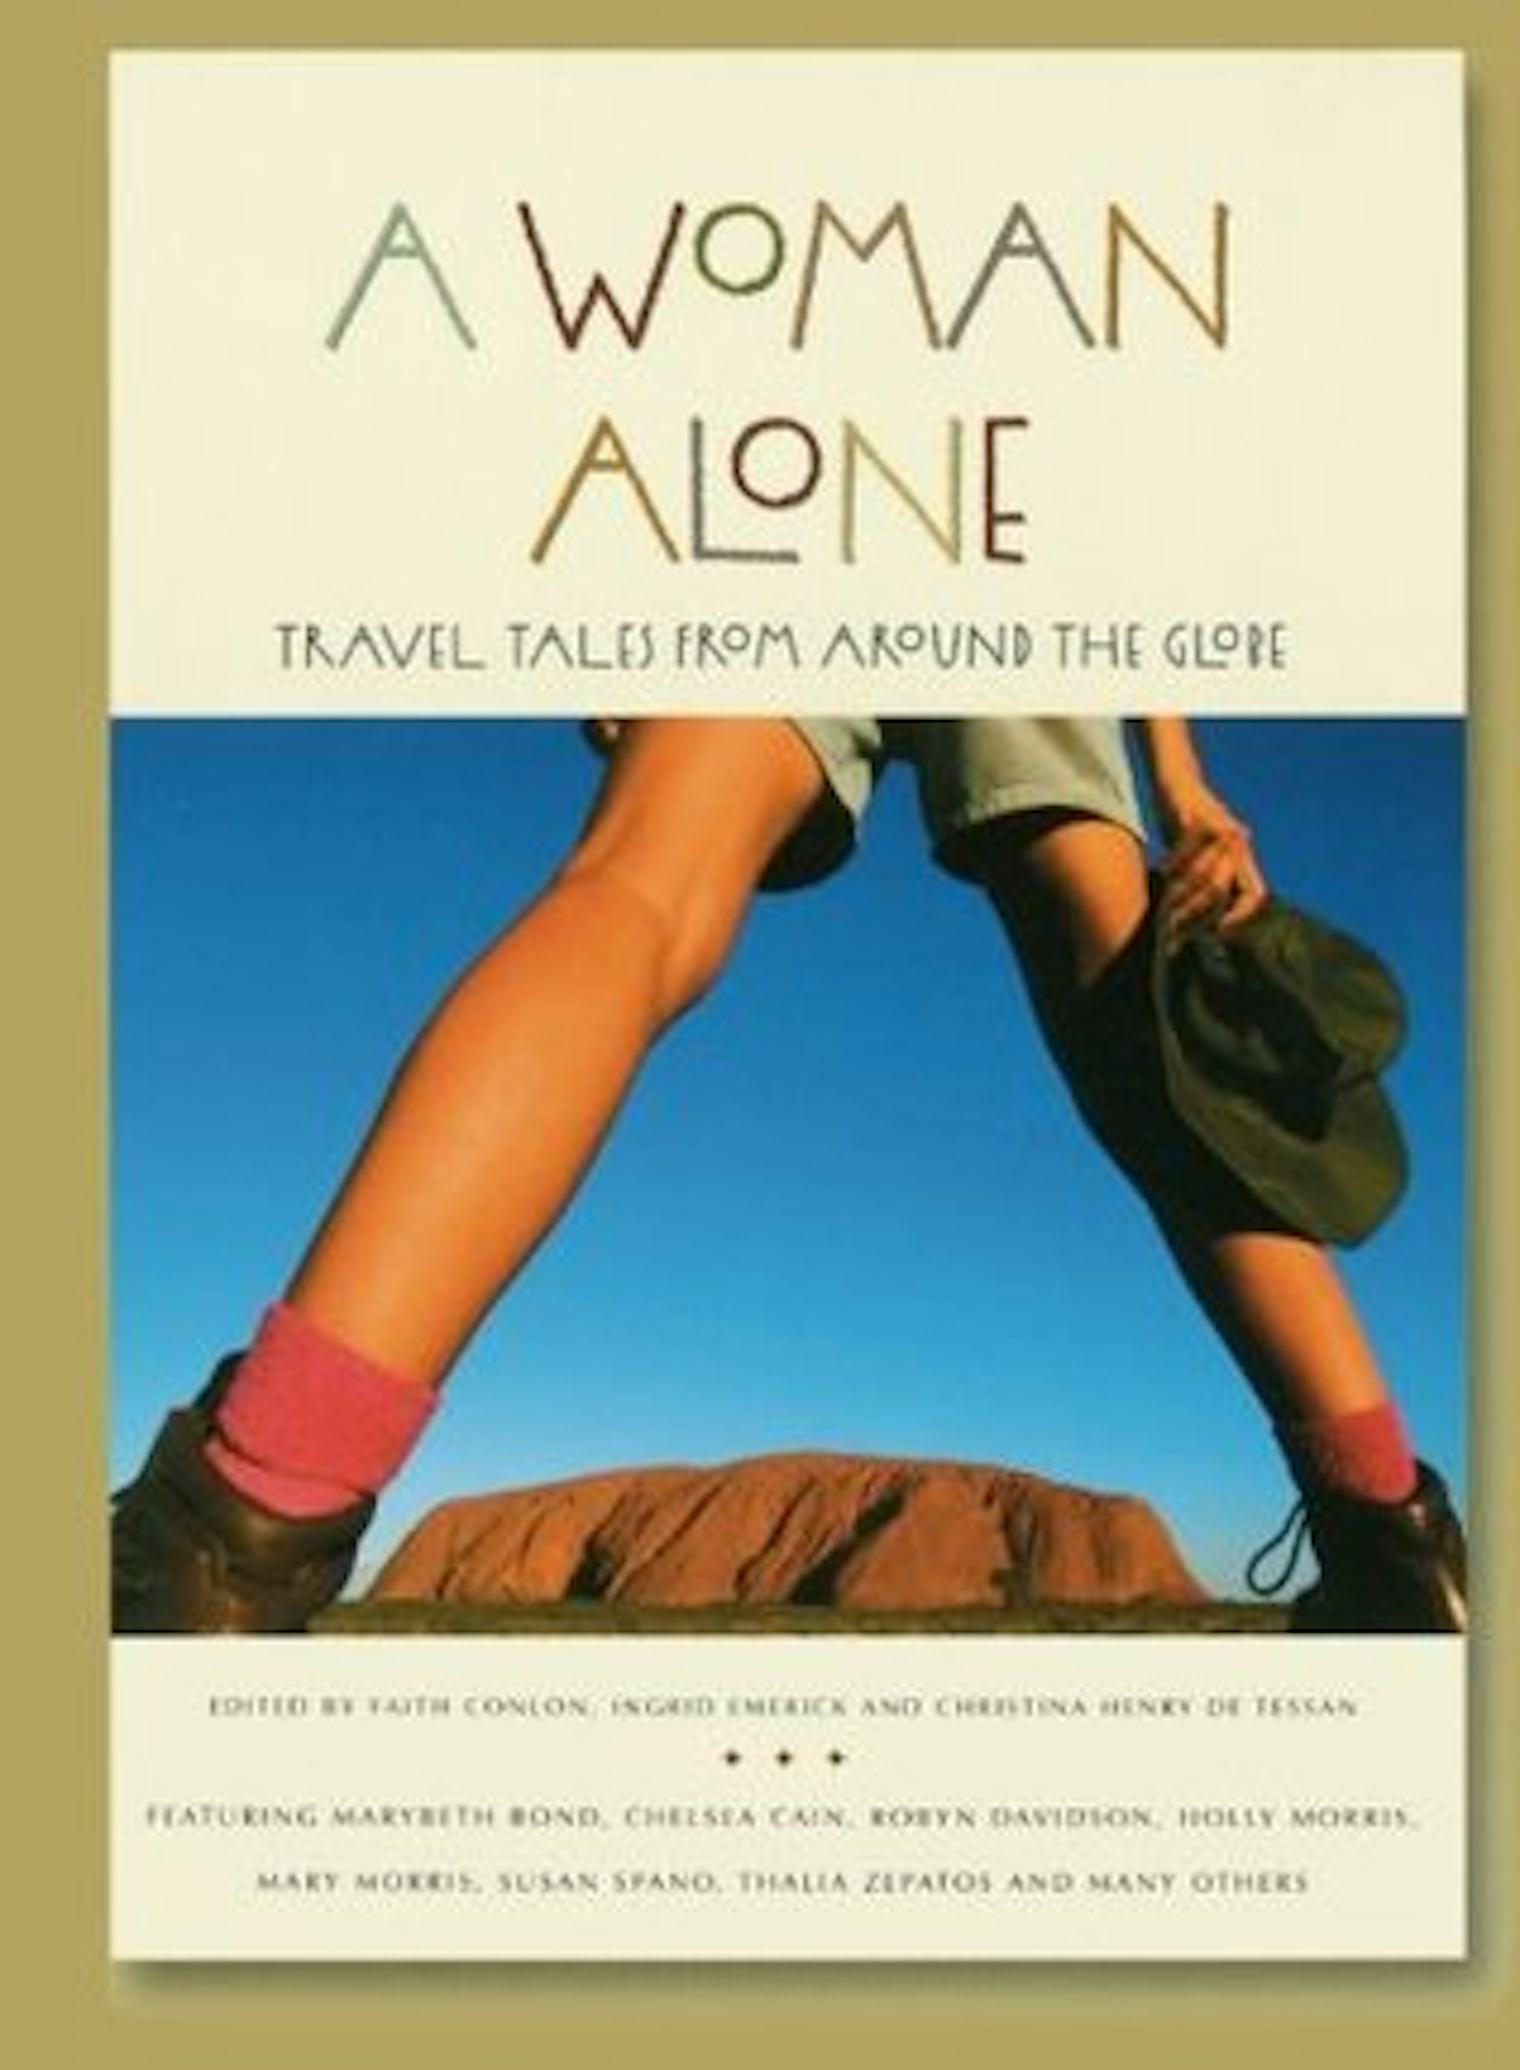 female solo travel books